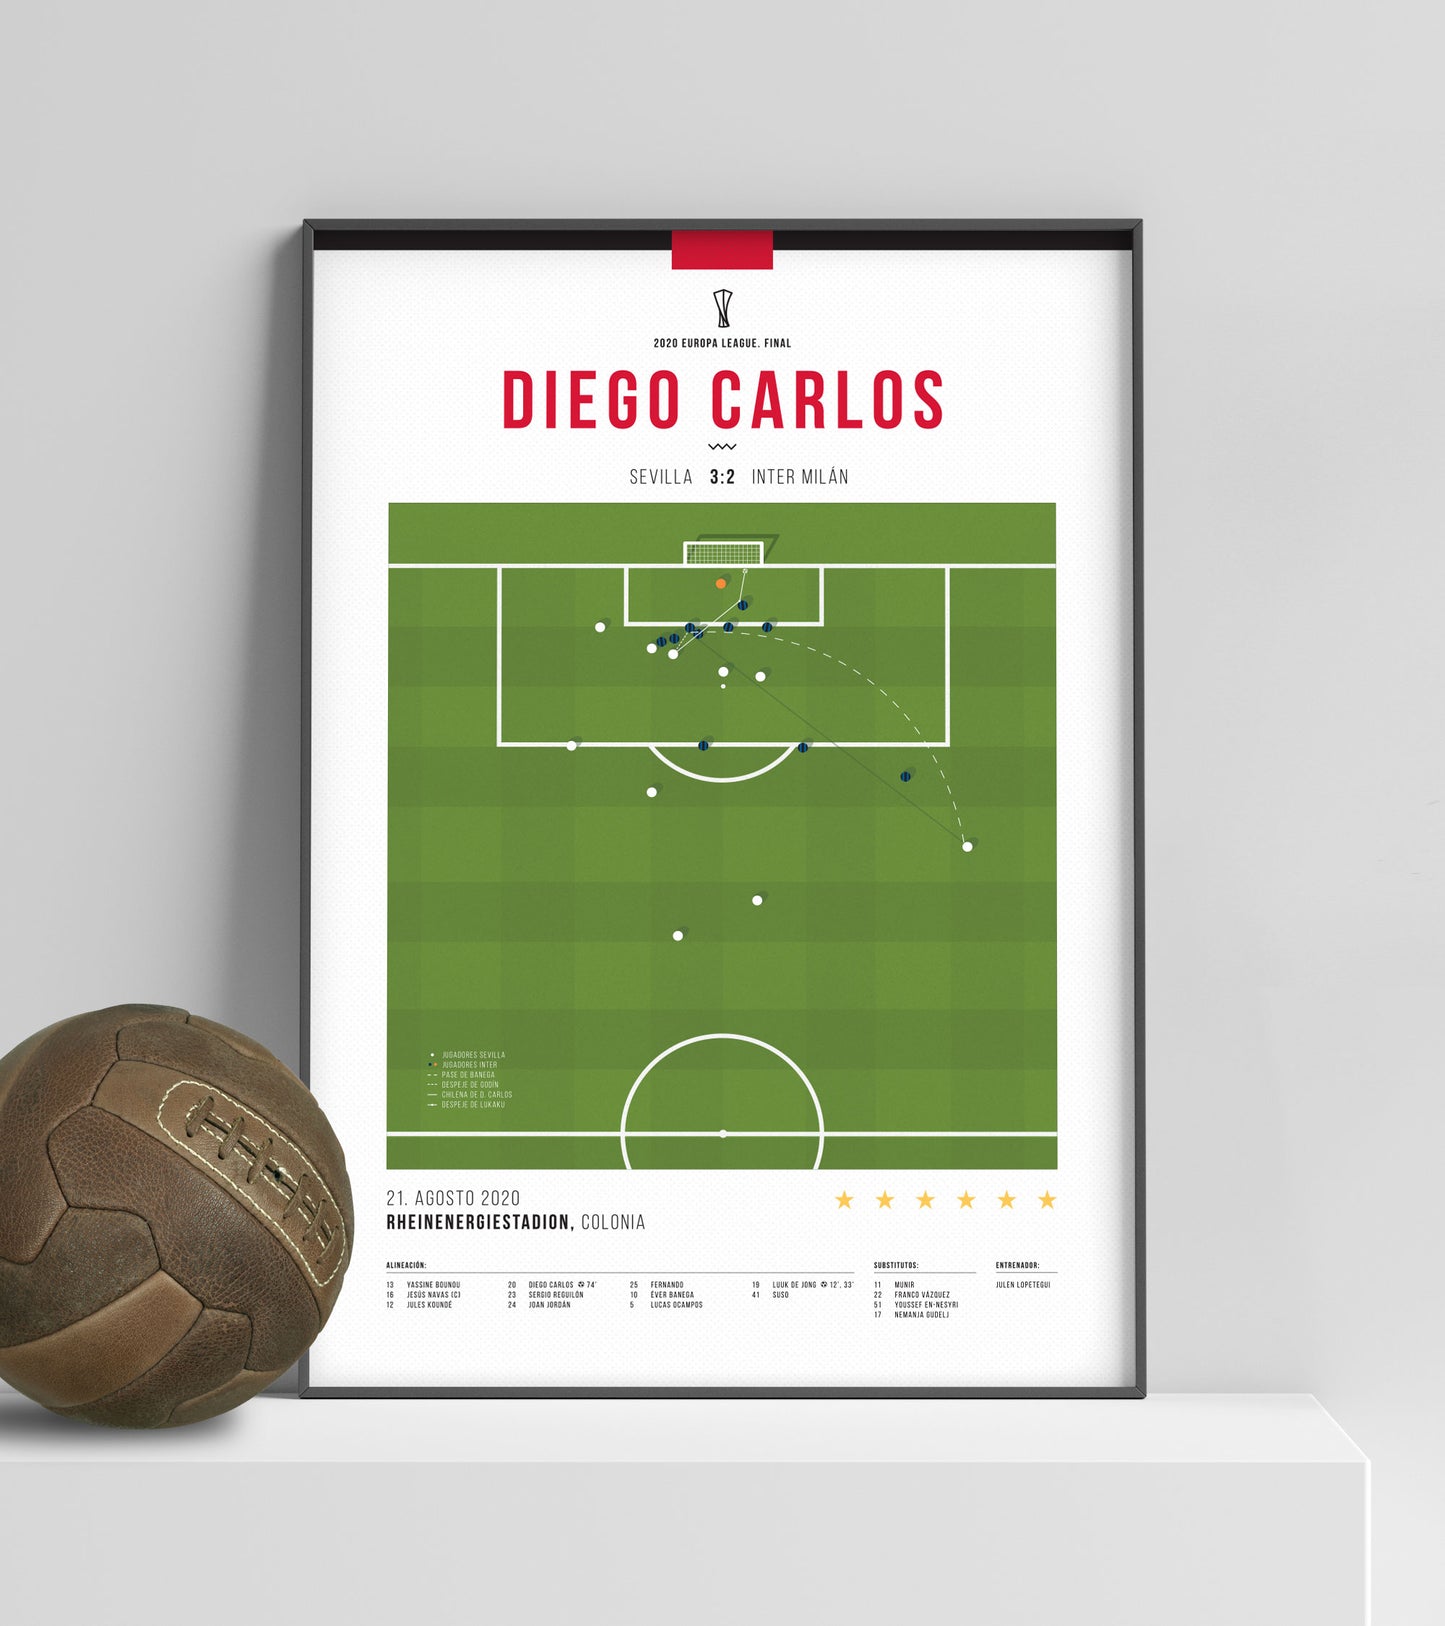 Diego Carlos Overhead Kick contre l'Inter Milan